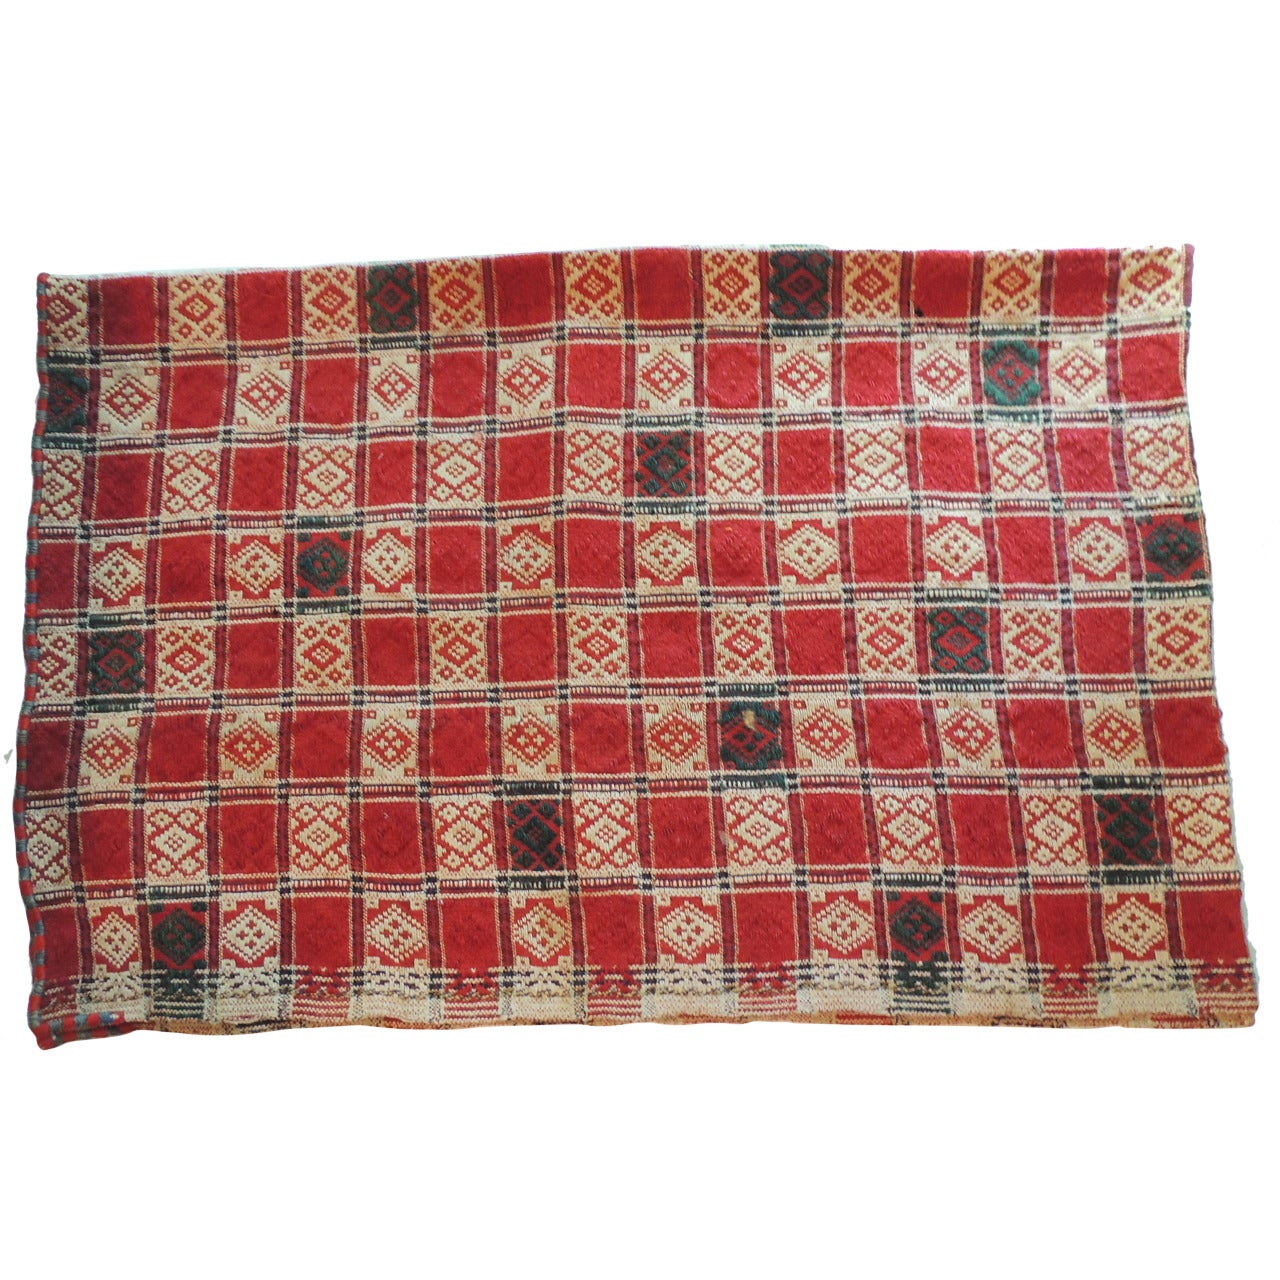 Anatolian Checkerboard Antique Textile.